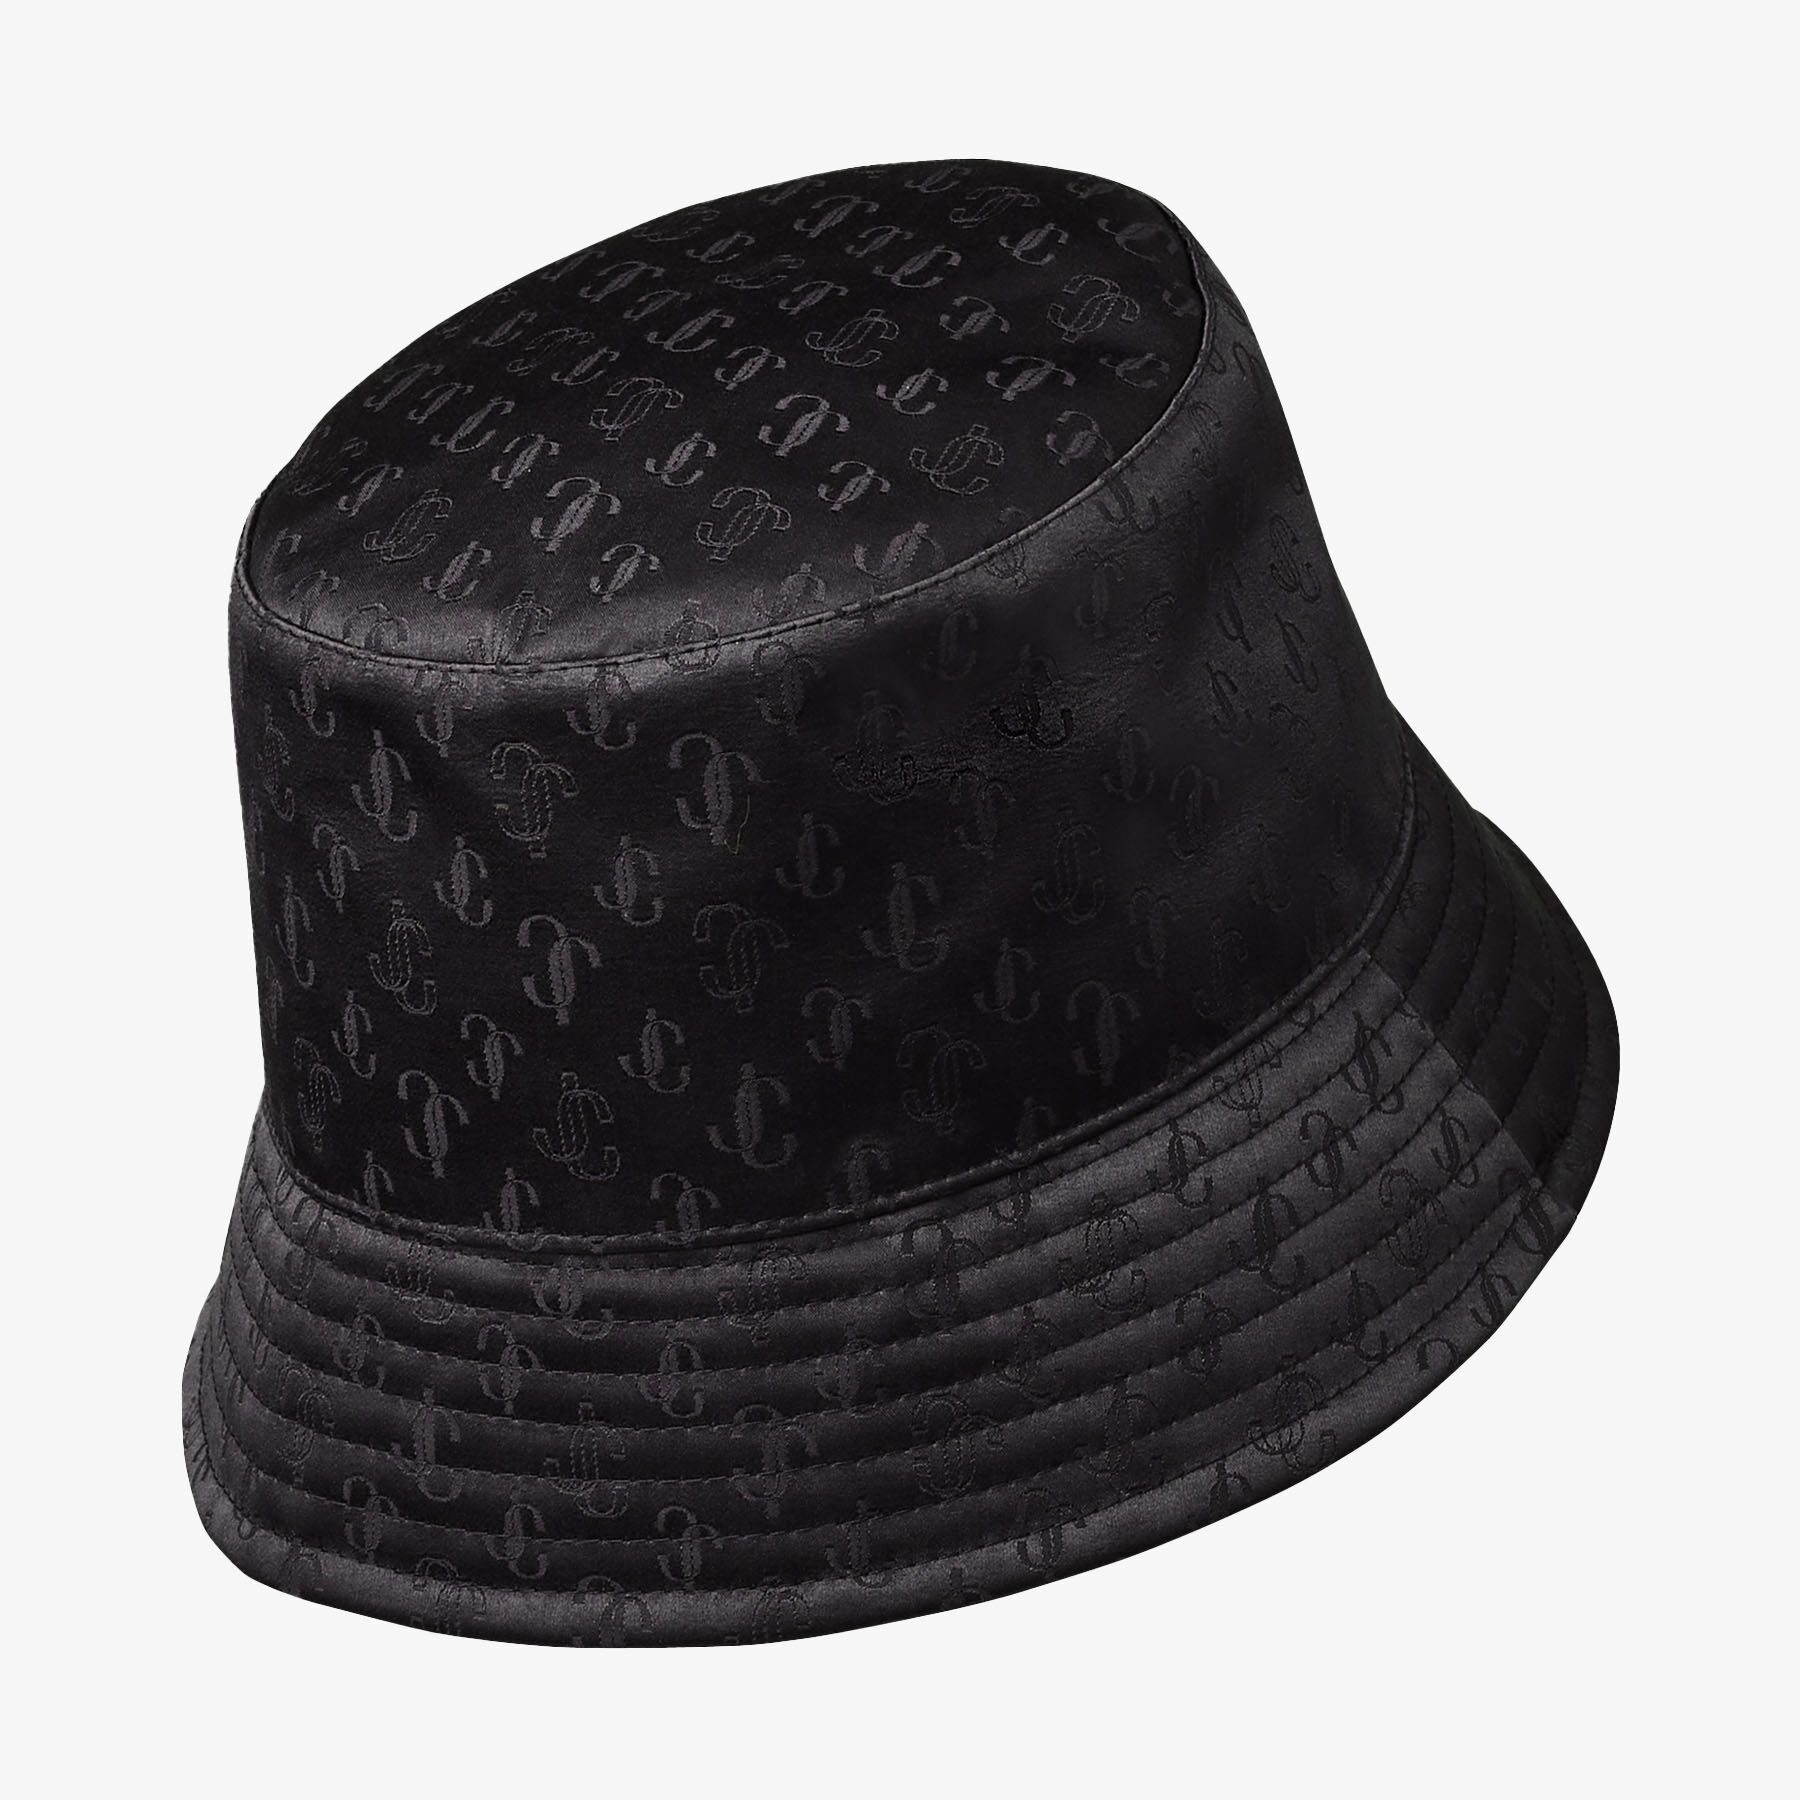 Louis Vuitton Authentic Bucket Hat 2021 Since 1854 Edition, Men's